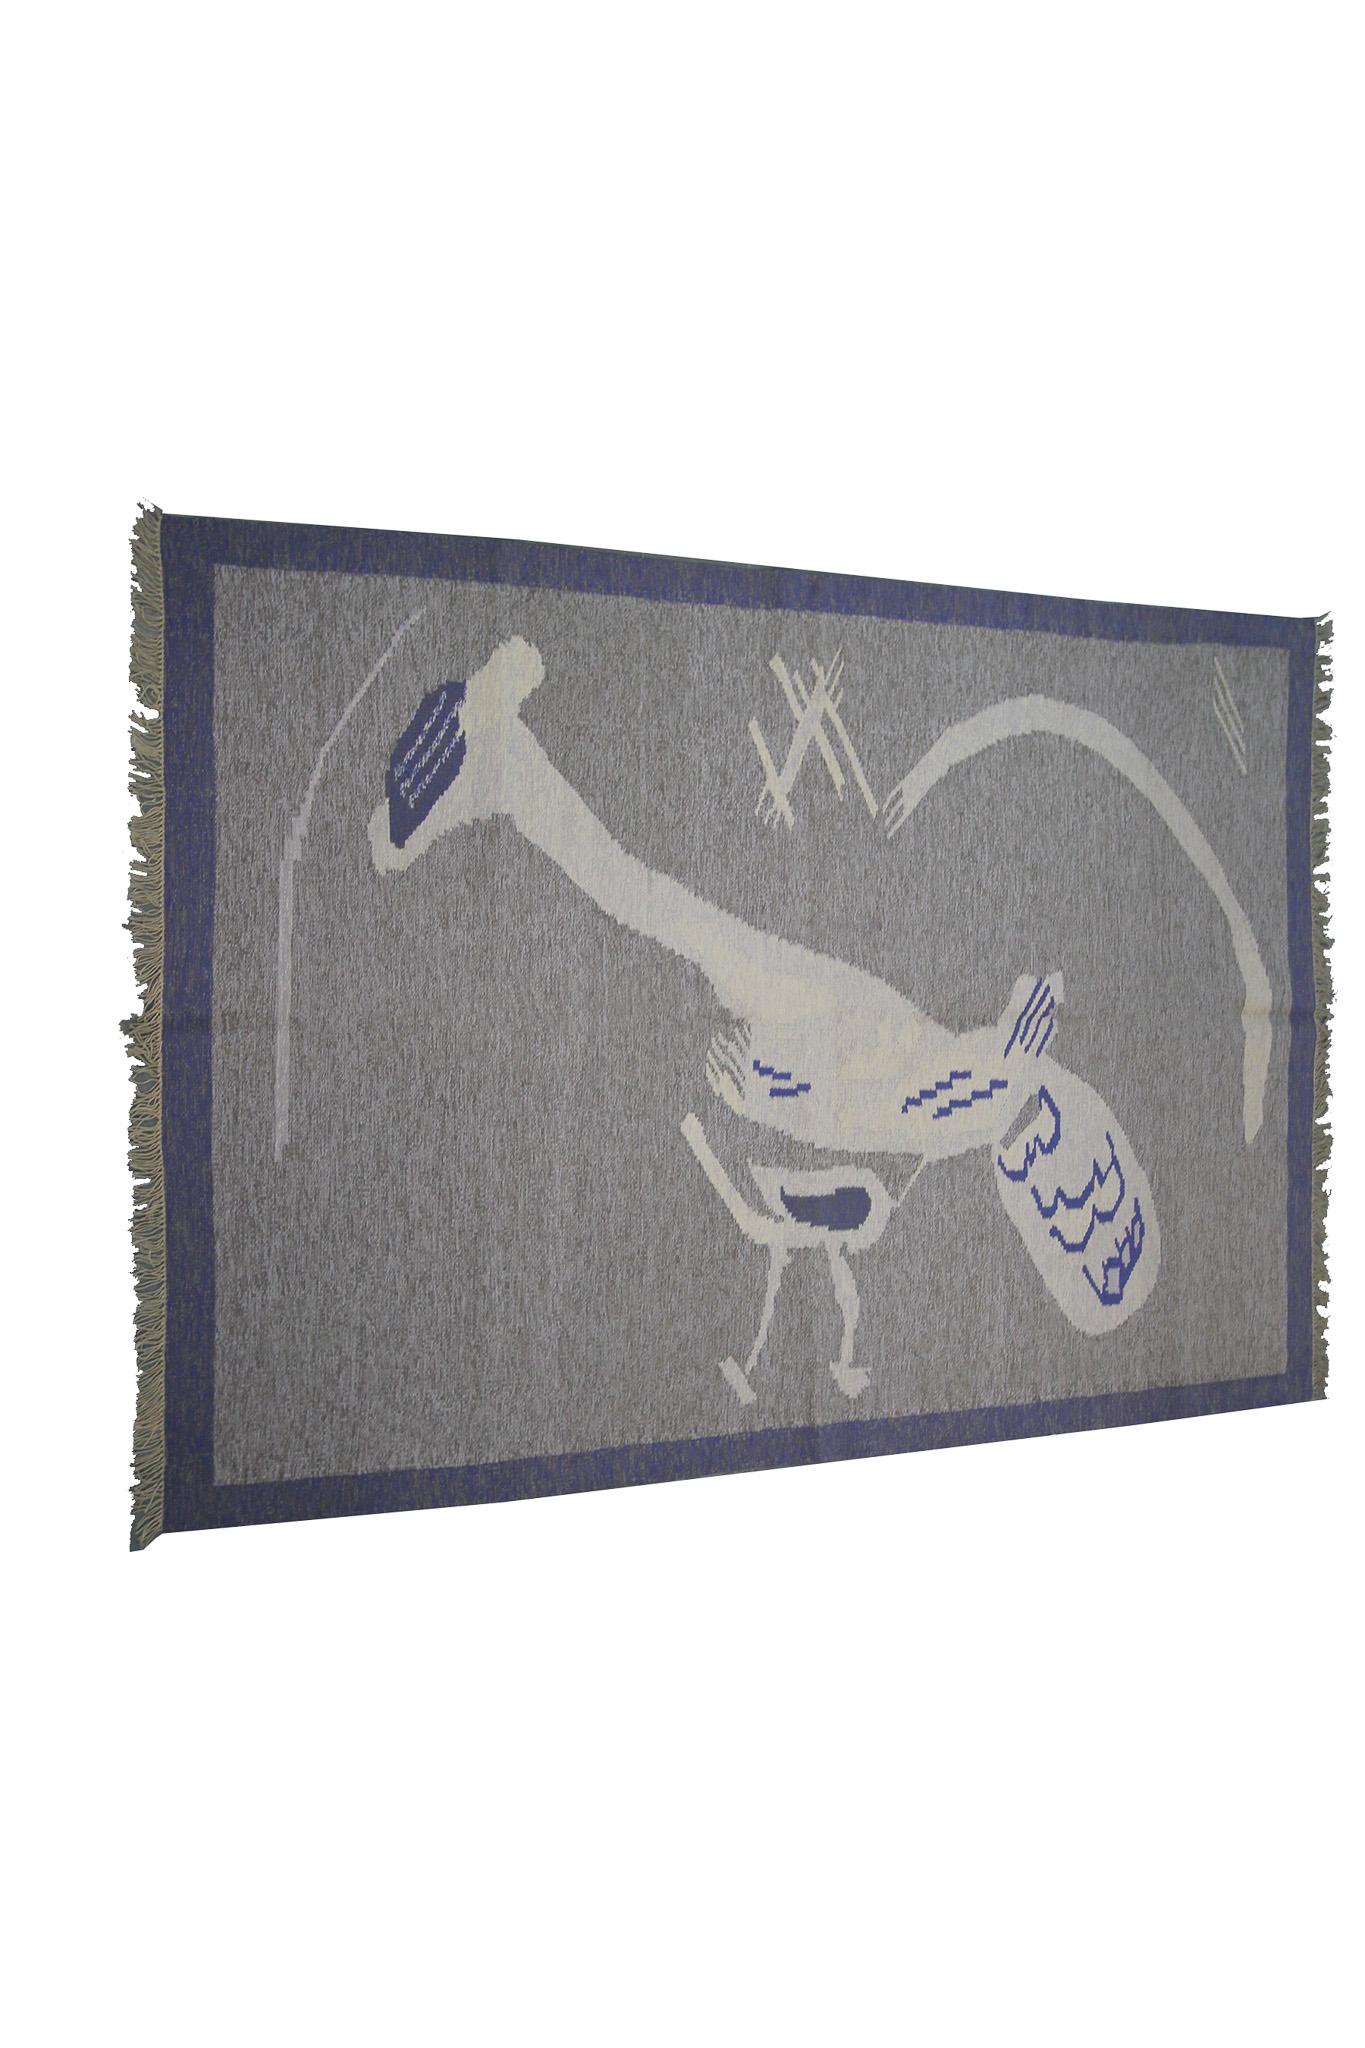 Vintage European Kilim Flatwoven Rug Art Nouveau Signed Tapestry 

5'2